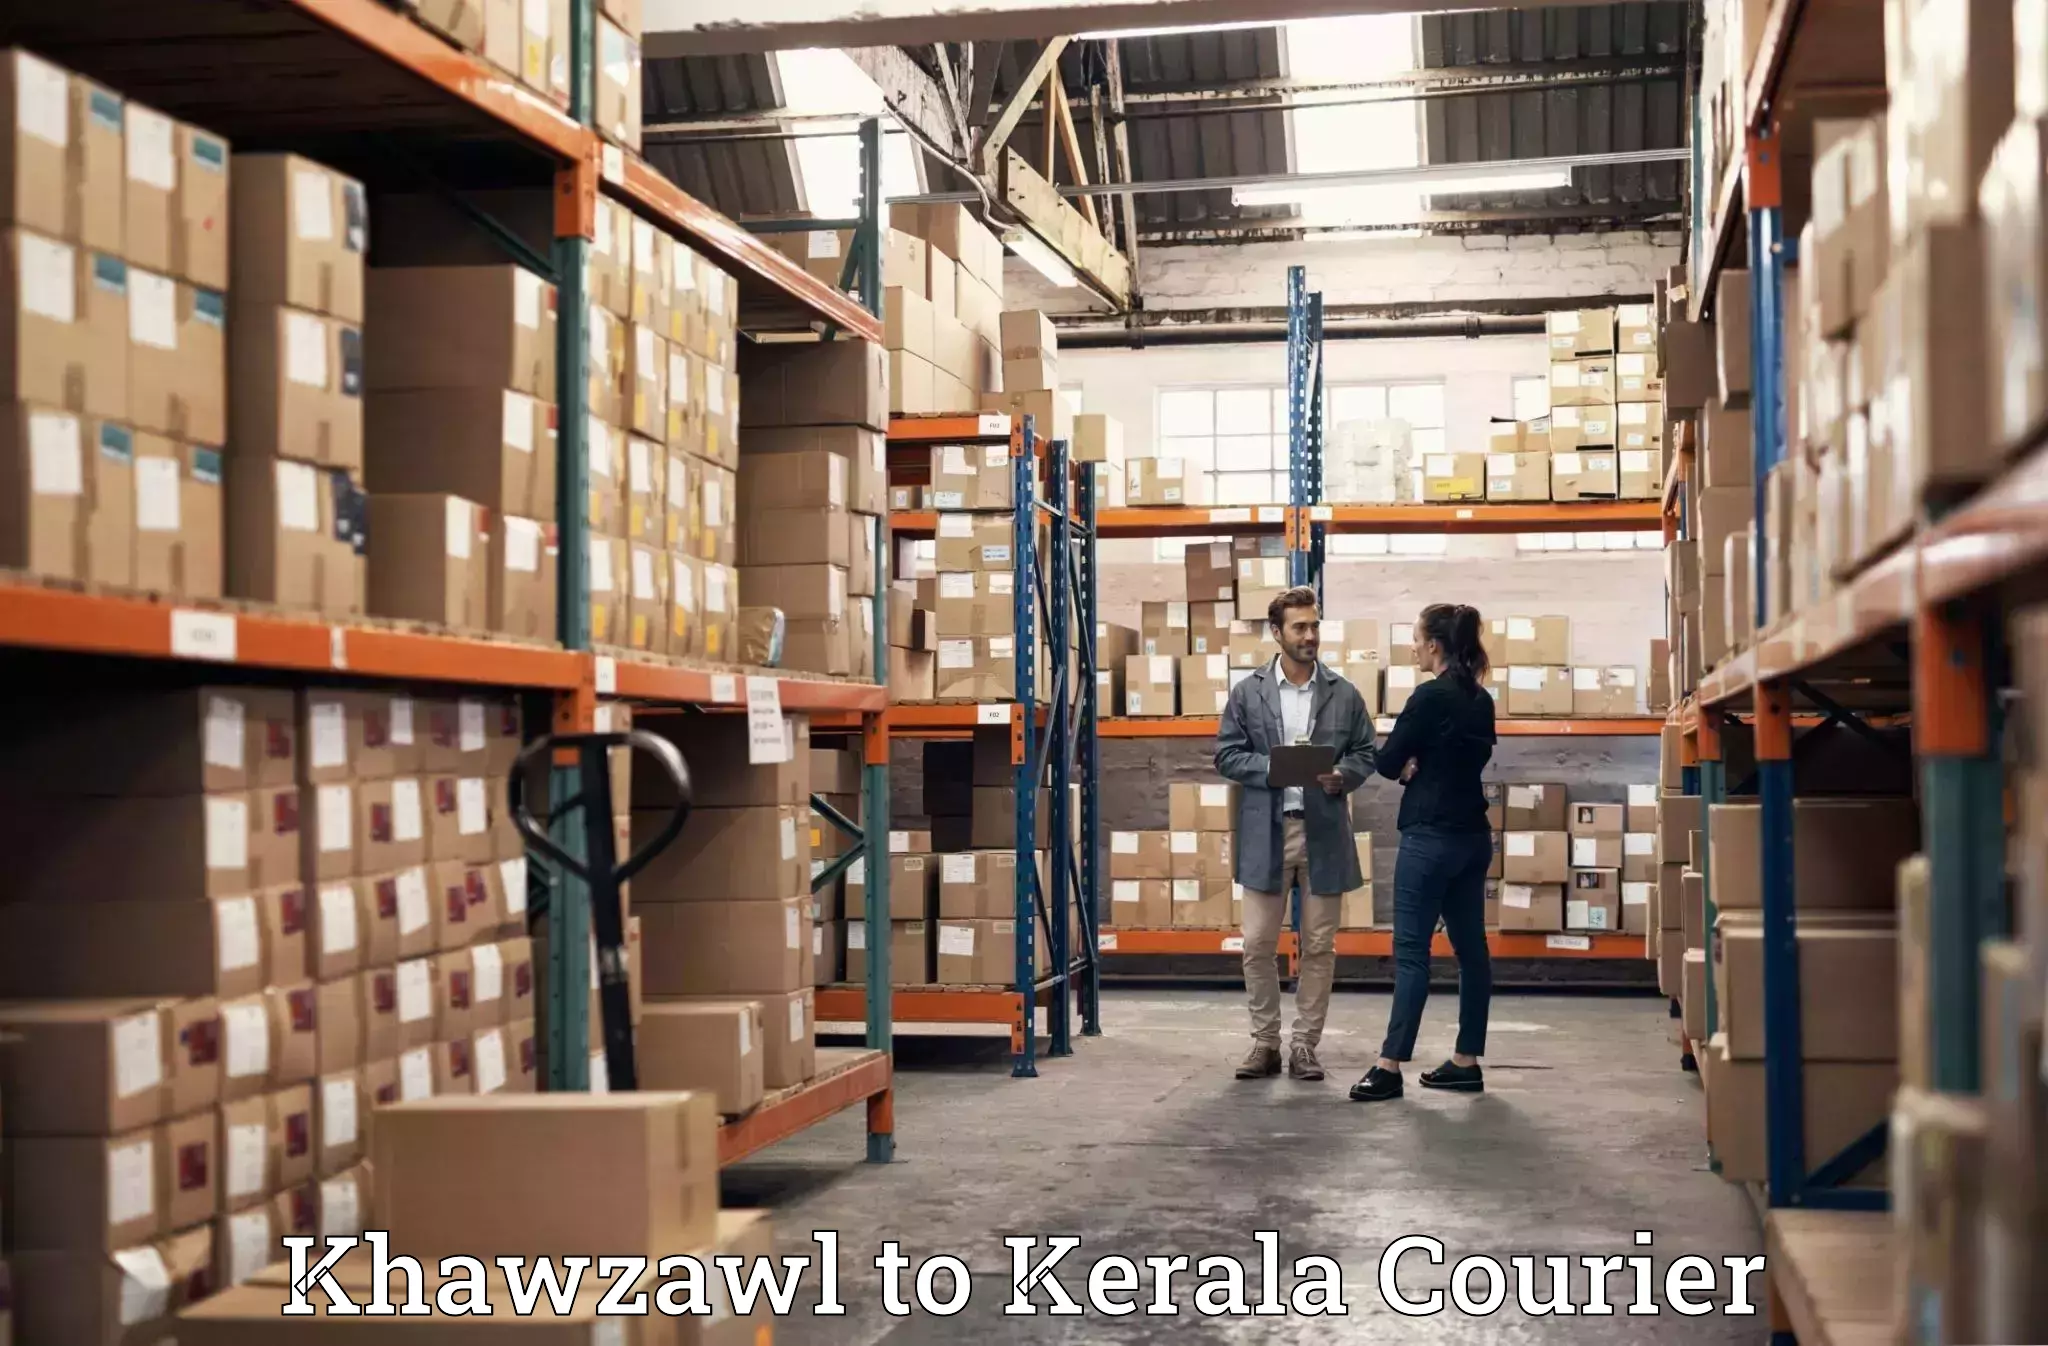 Furniture moving experts Khawzawl to Kunnamkulam